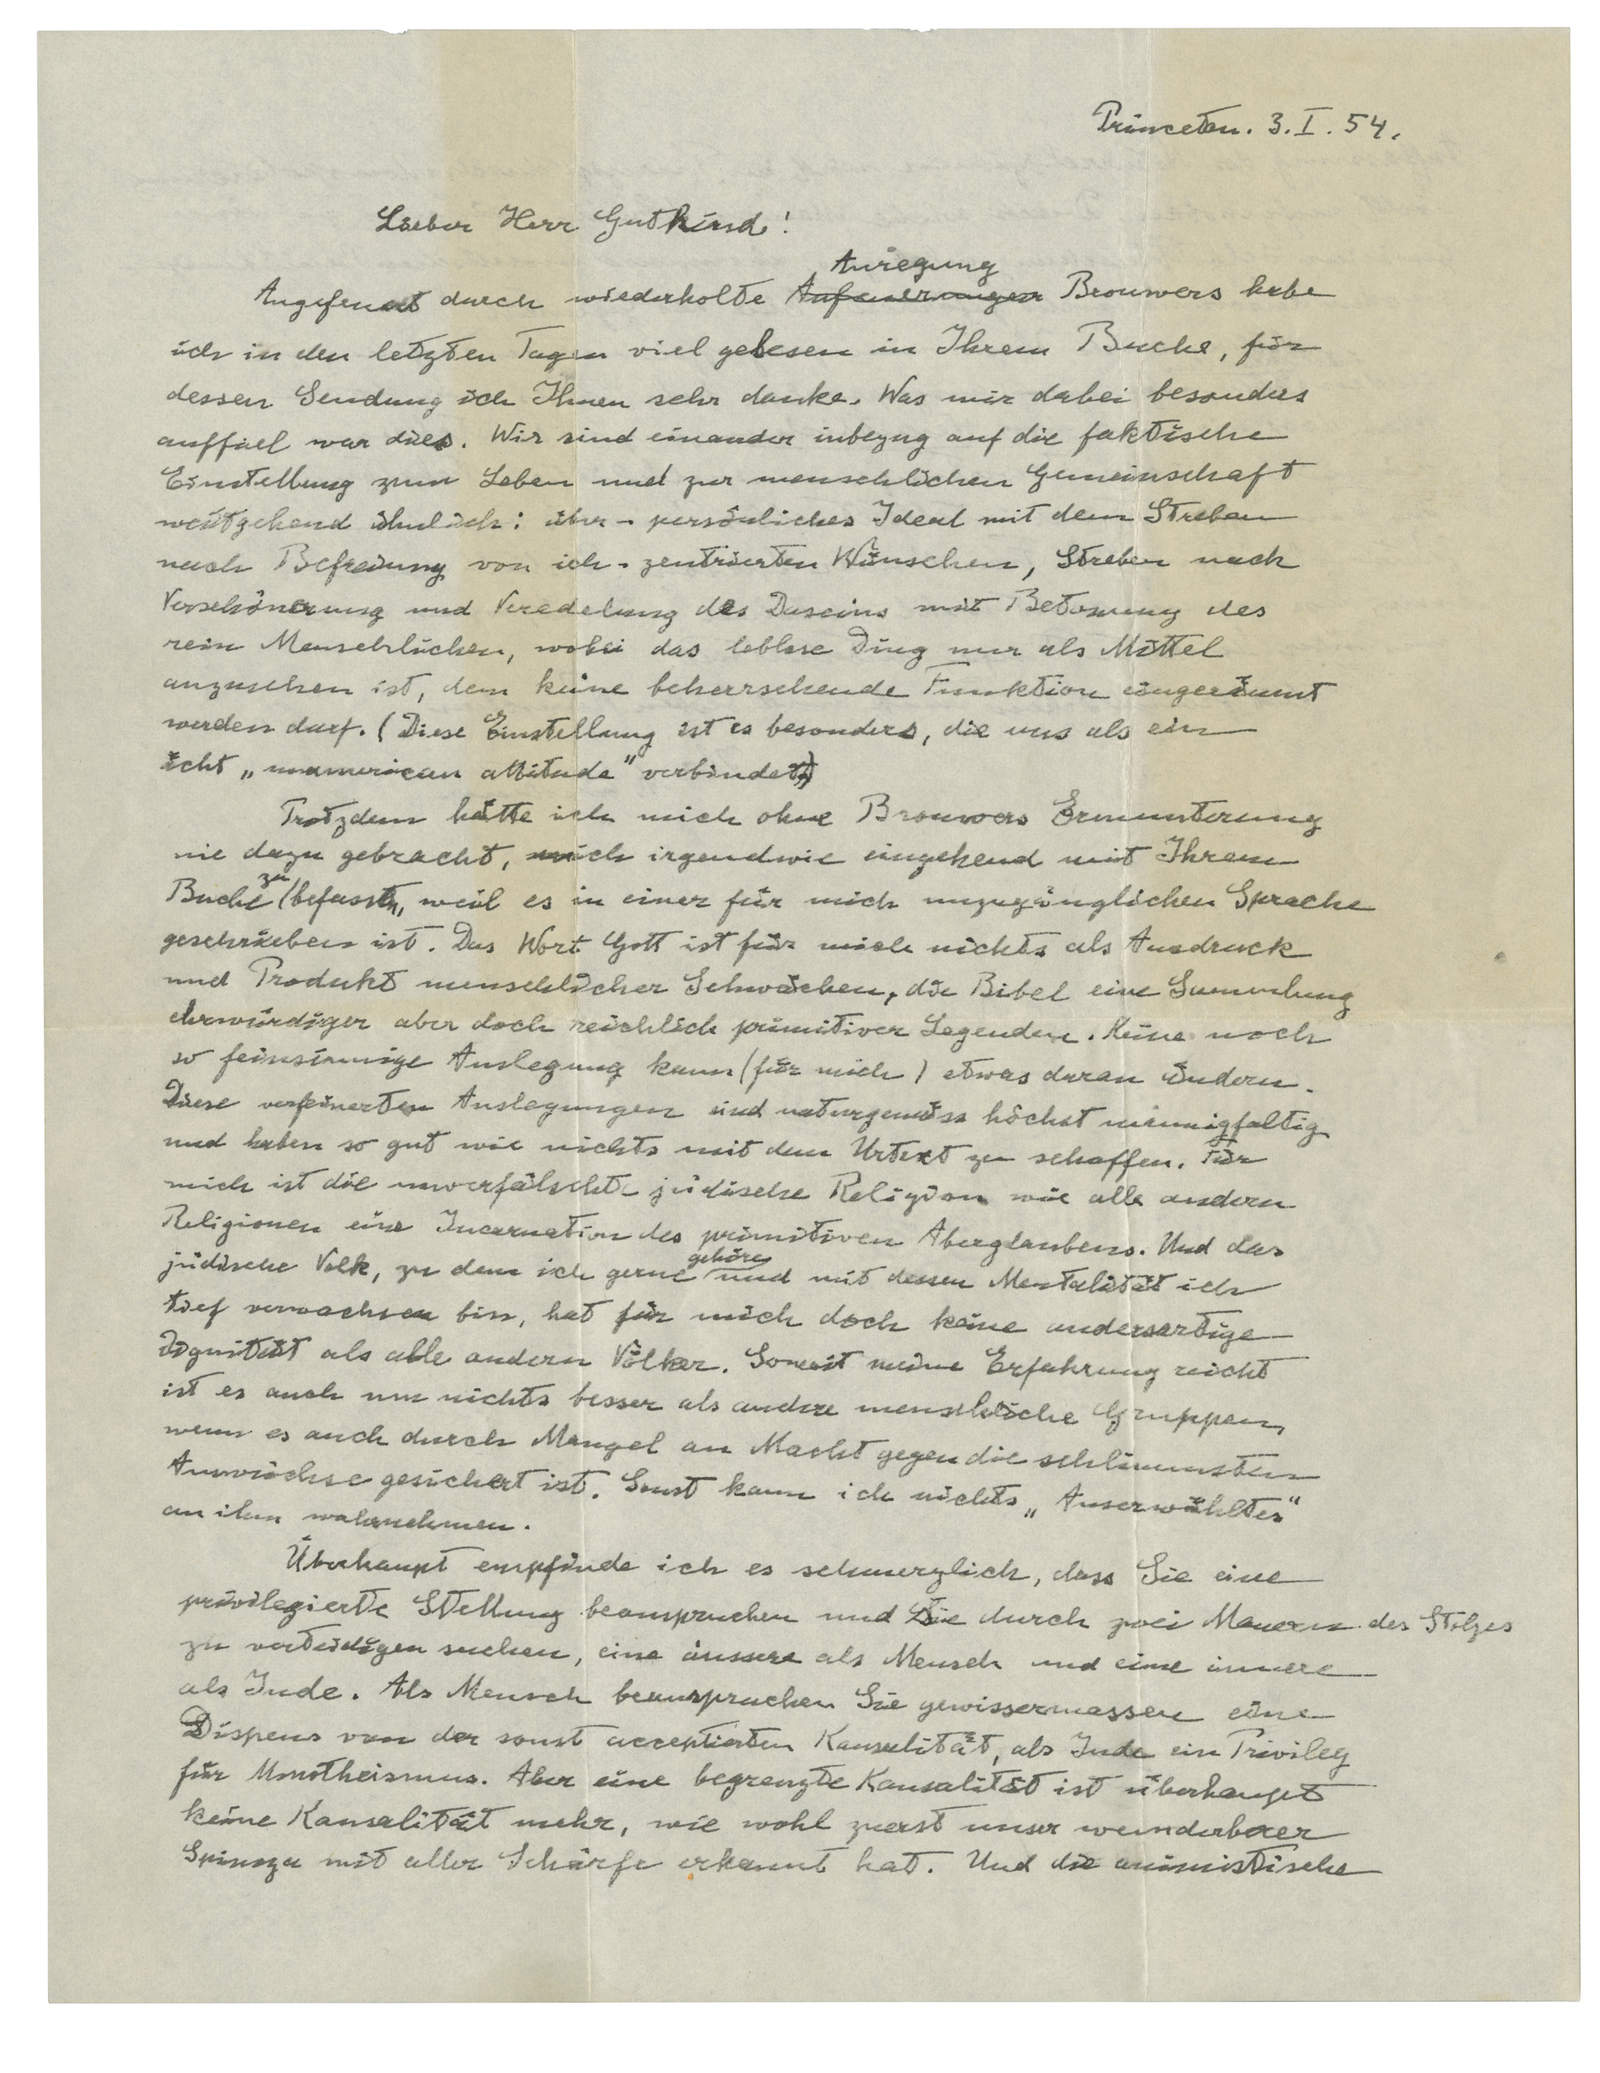 Una carta de Einstein se vende en 2.9 mdd, El Siglo de Torreón